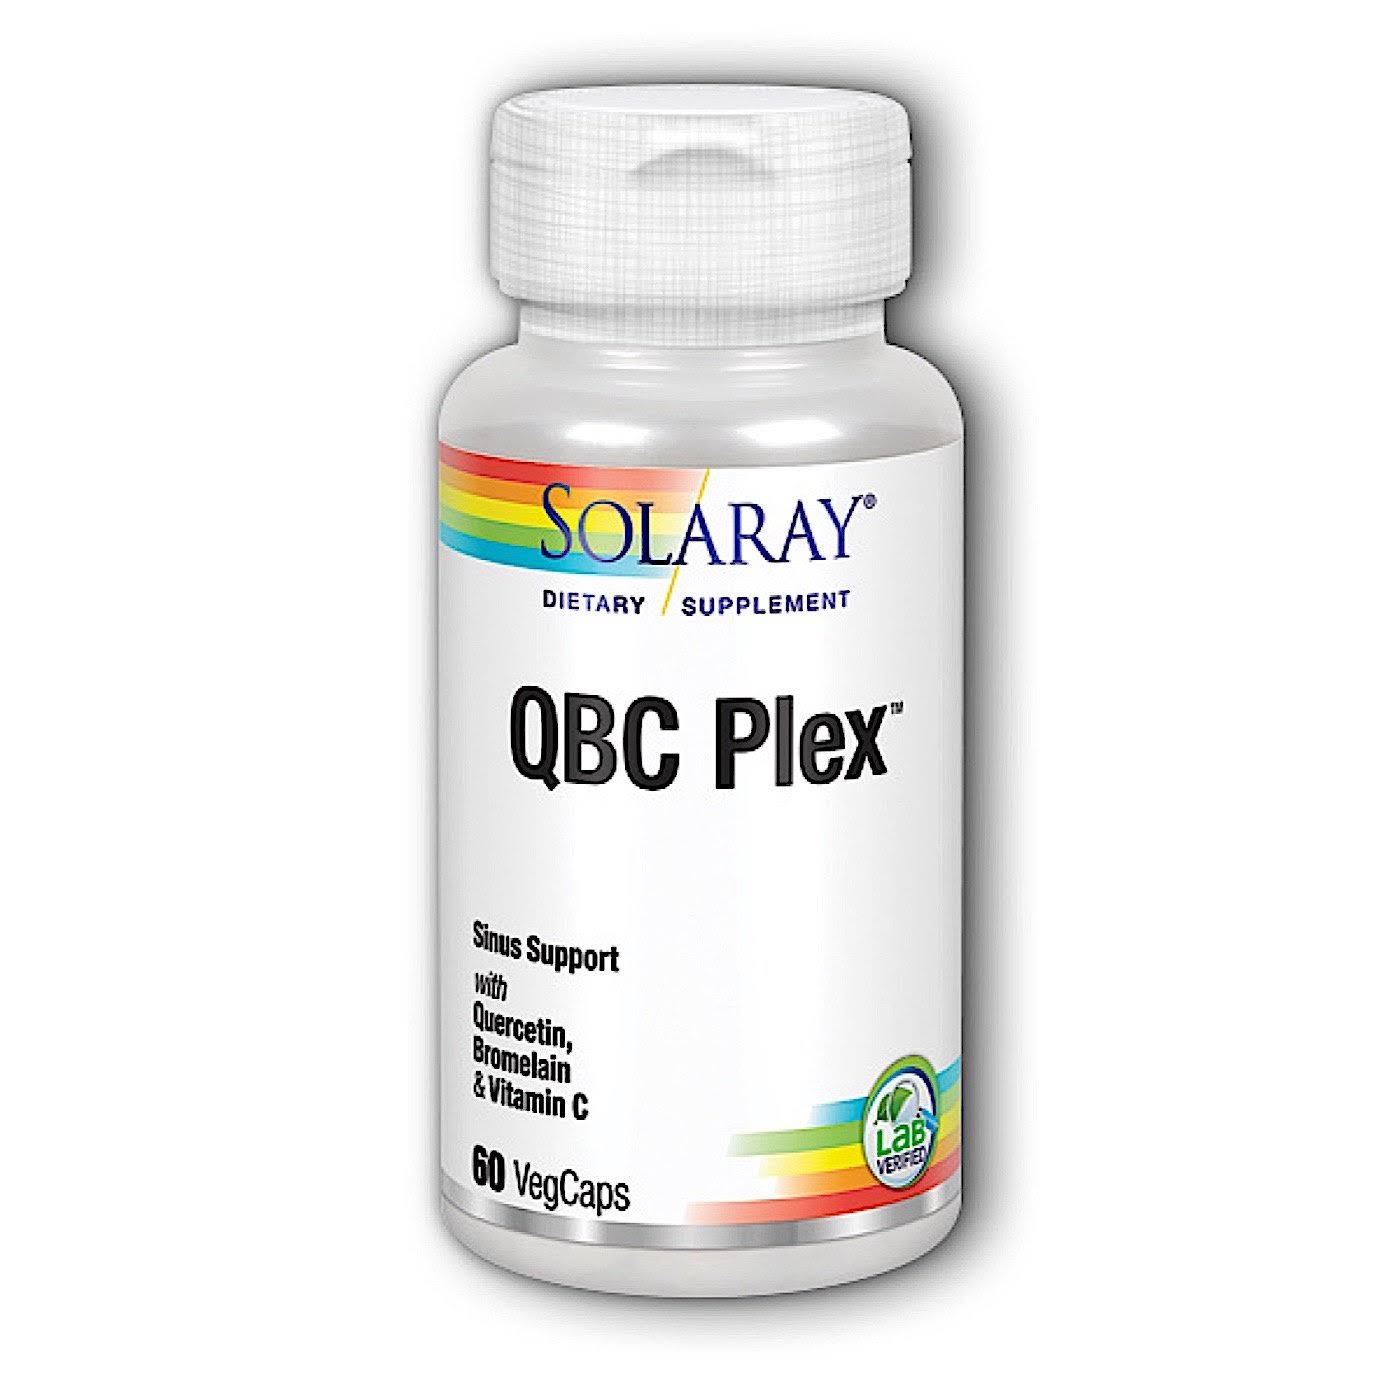 Solaray QBC Plex Dietary Supplement Capsules - 60ct